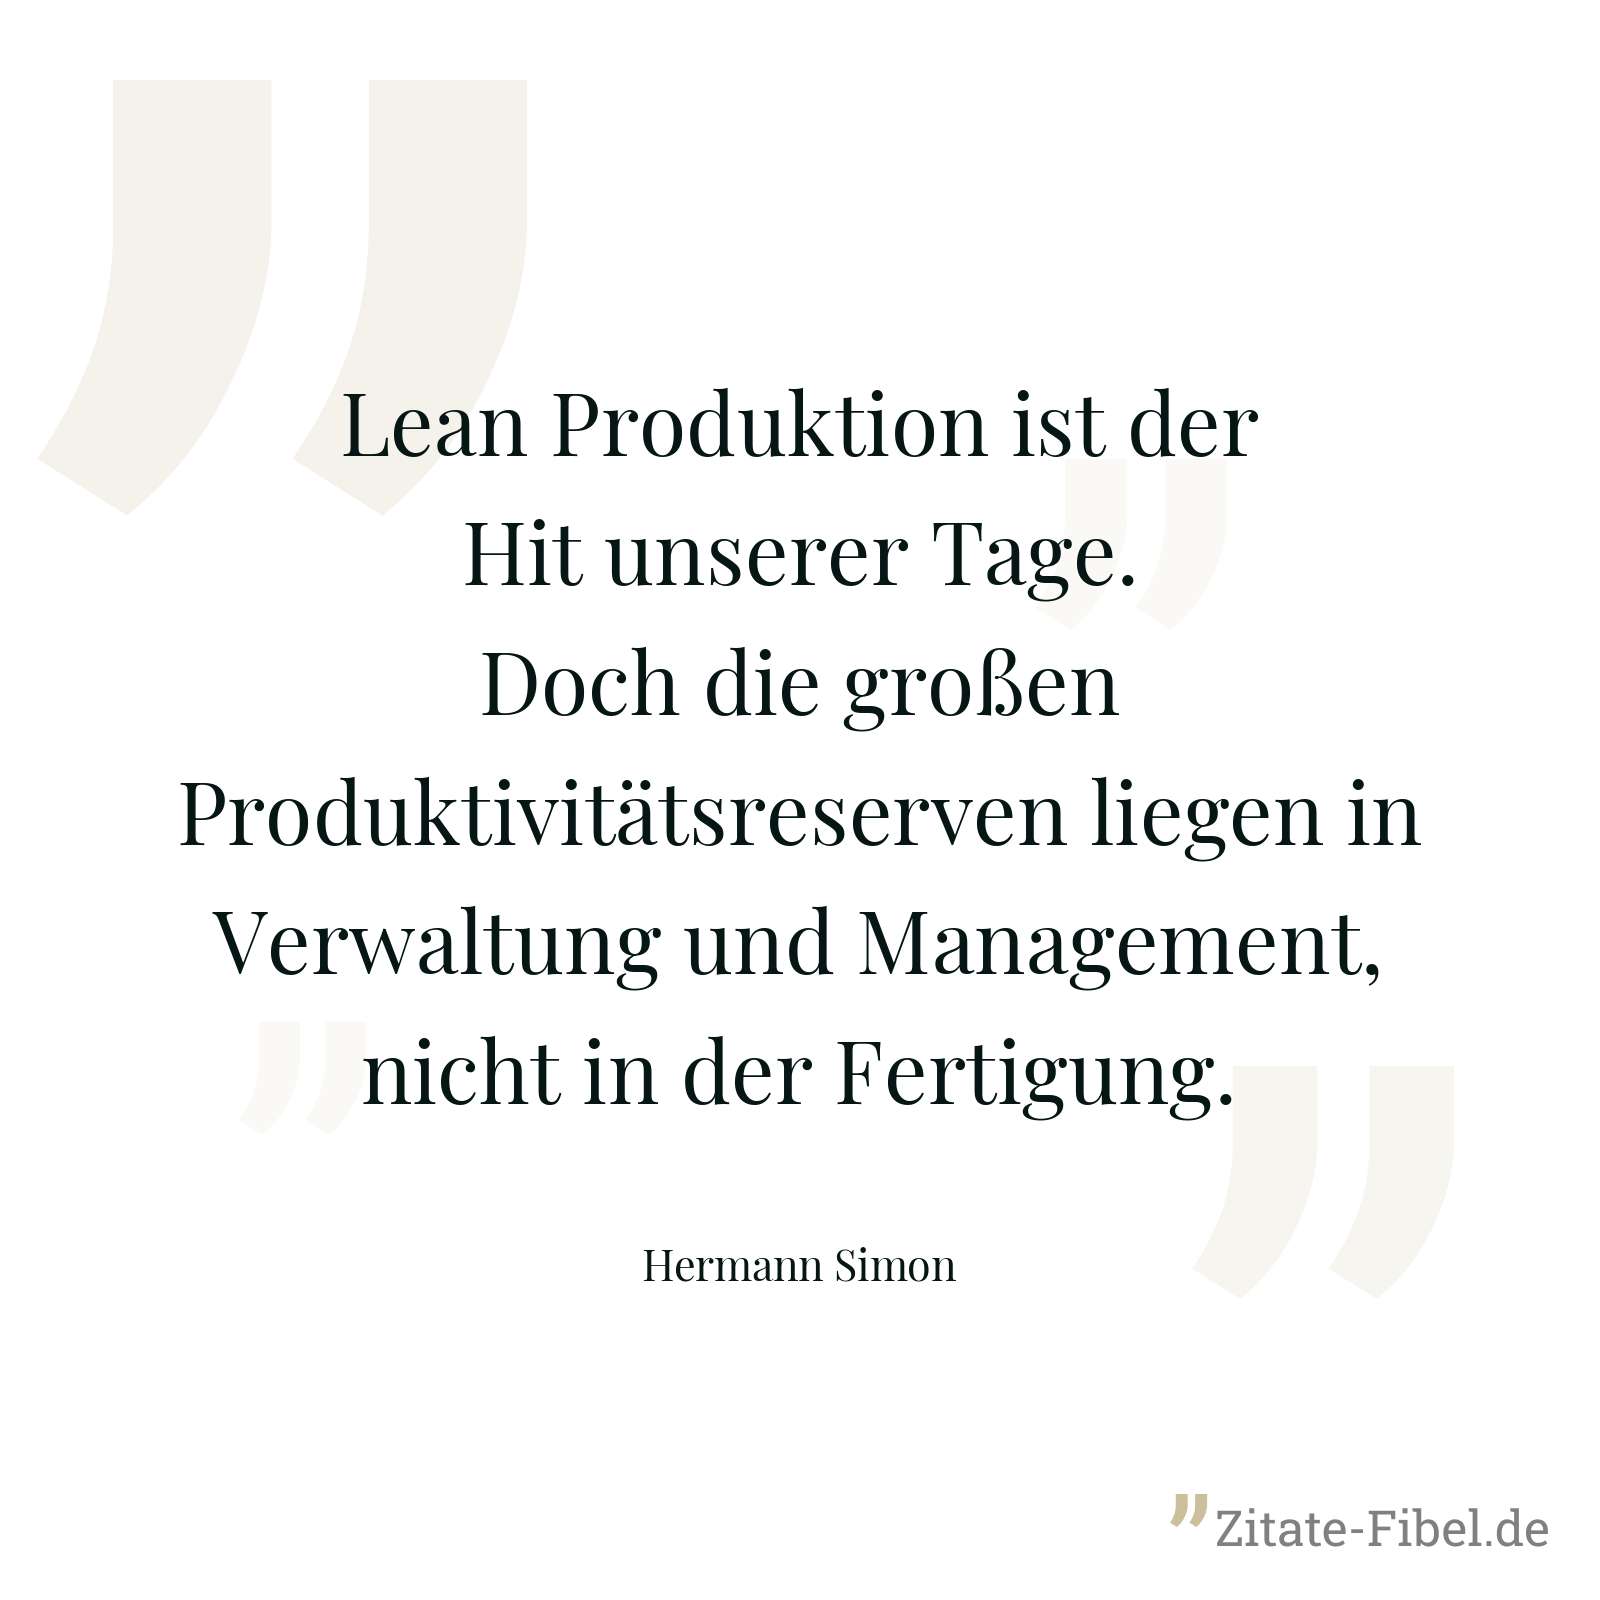 Lean Produktion ist der Hit unserer Tage. Doch die großen Produktivitätsreserven liegen in Verwaltung und Management, nicht in der Fertigung. - Hermann Simon